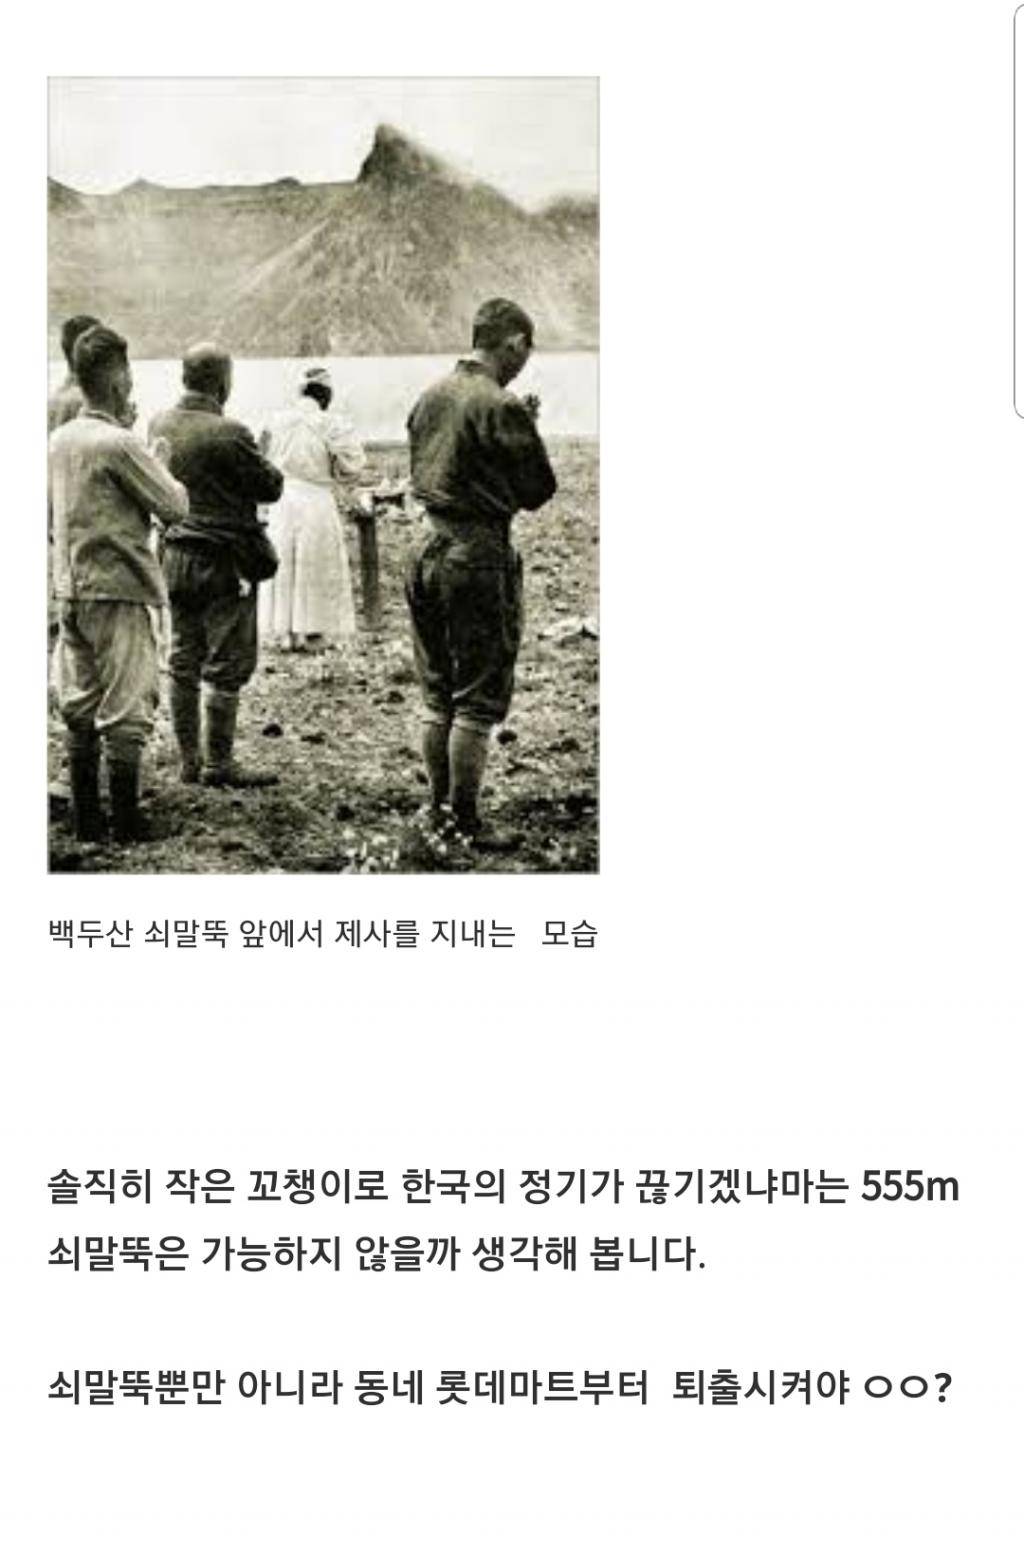 서울시가 지정한 한국 명소 1위 롯데타워의 실체 | 인스티즈